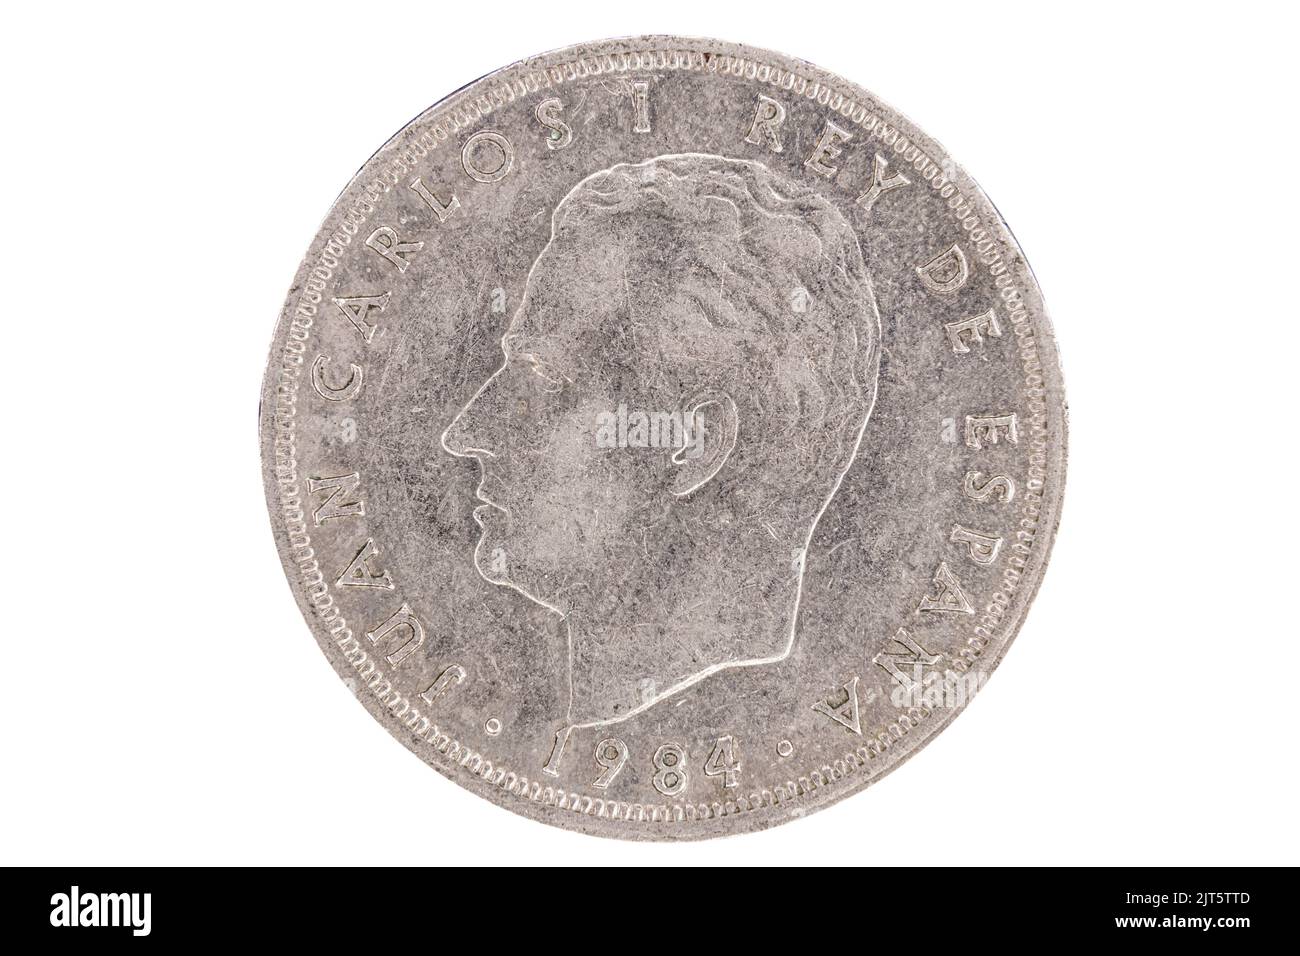 Anverso o cara de la moneda española de 5 pesetas del año 1984 Foto de stock